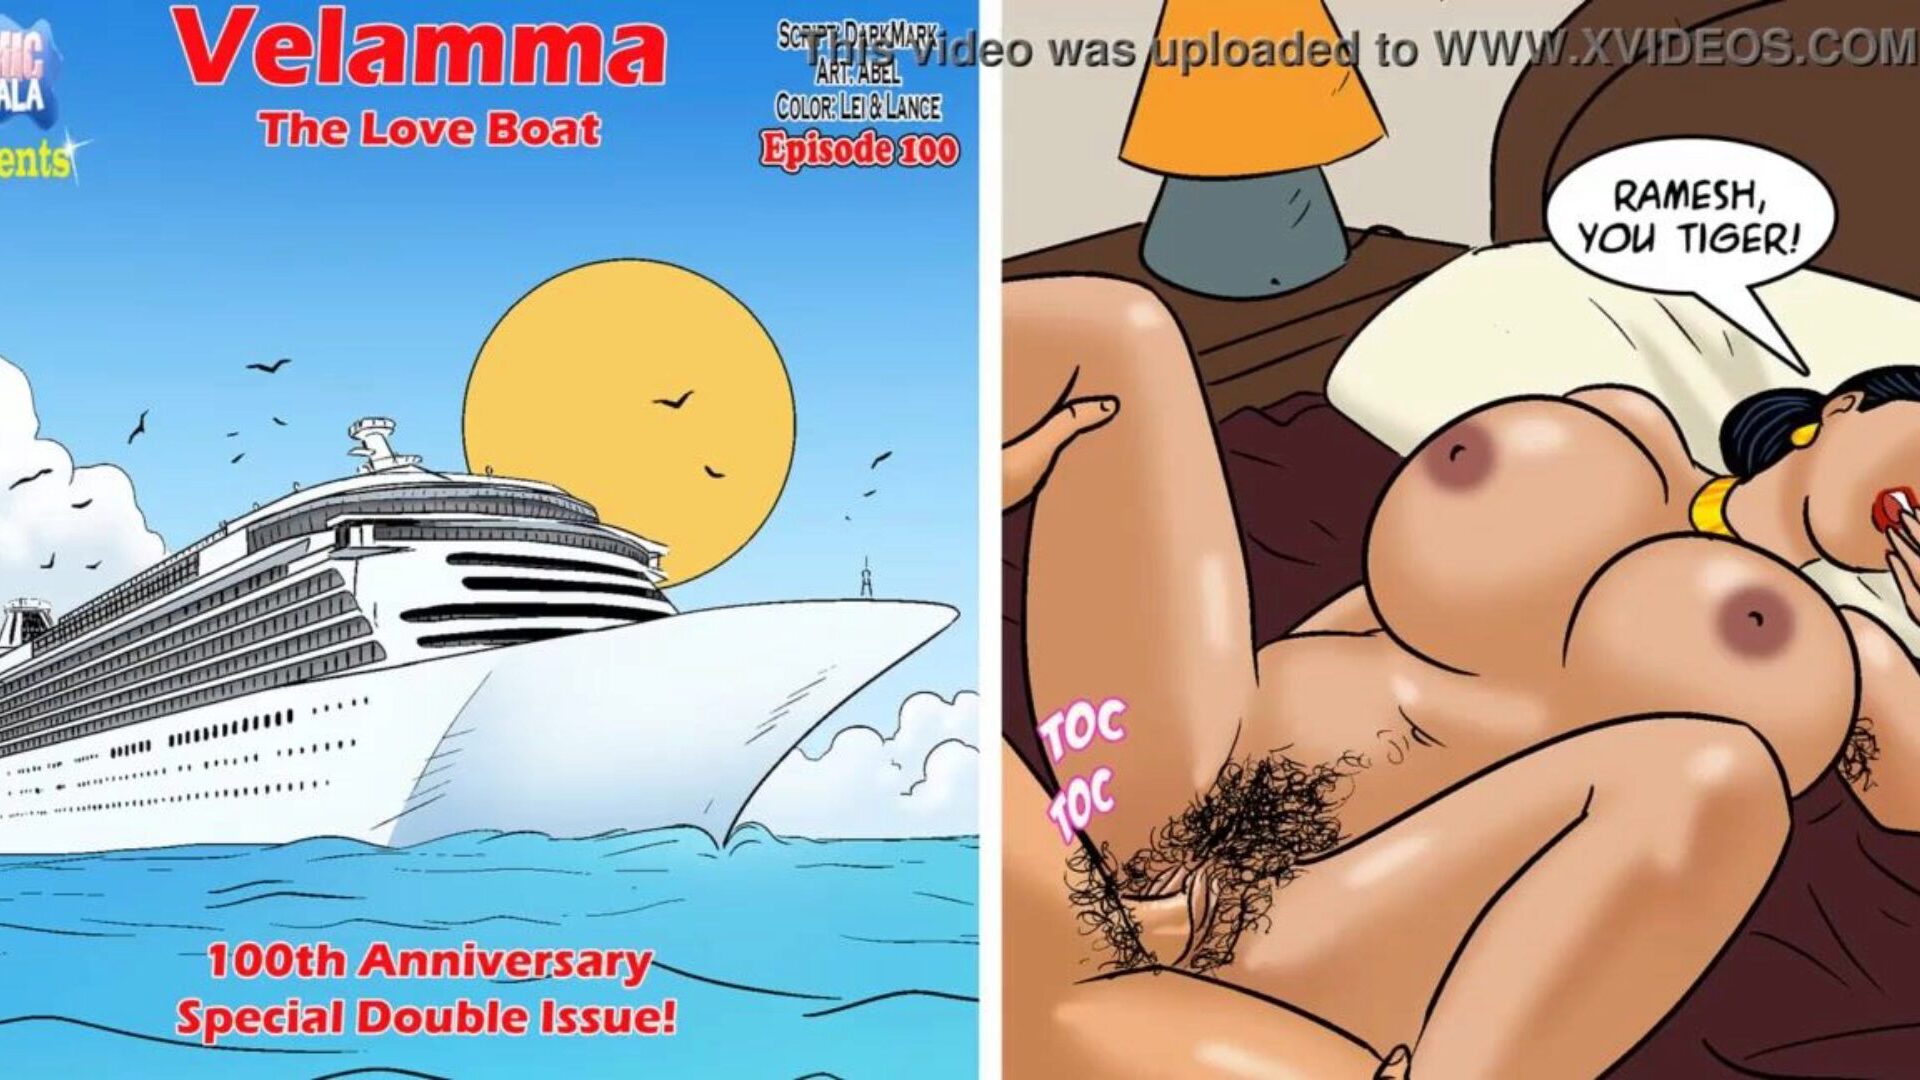 velamma aflevering 100 - de liefdesboot